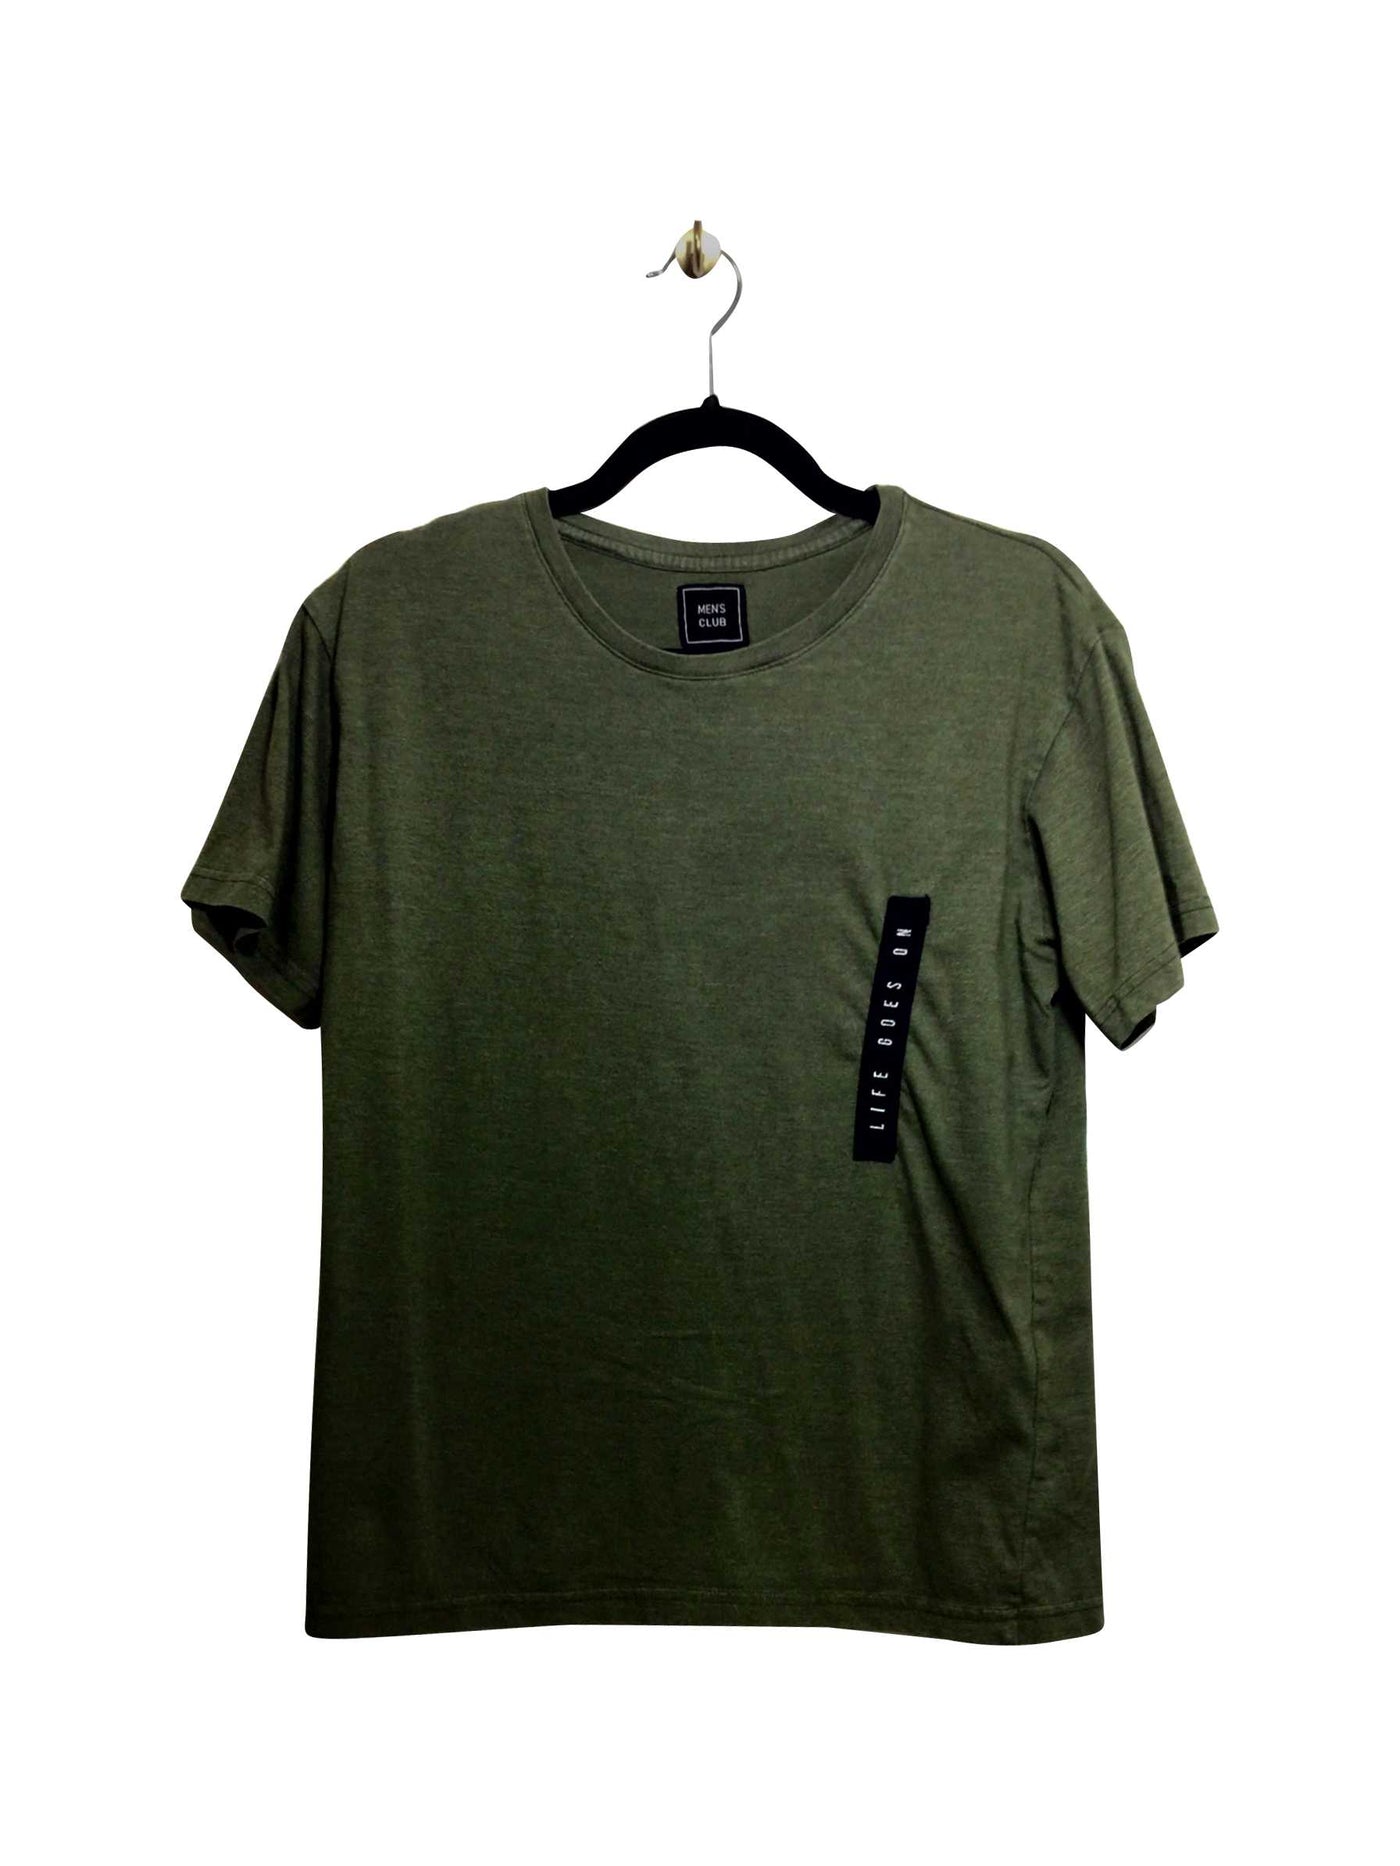 MEN'S CLUB Regular fit T-shirt in Green  -  M   Koop